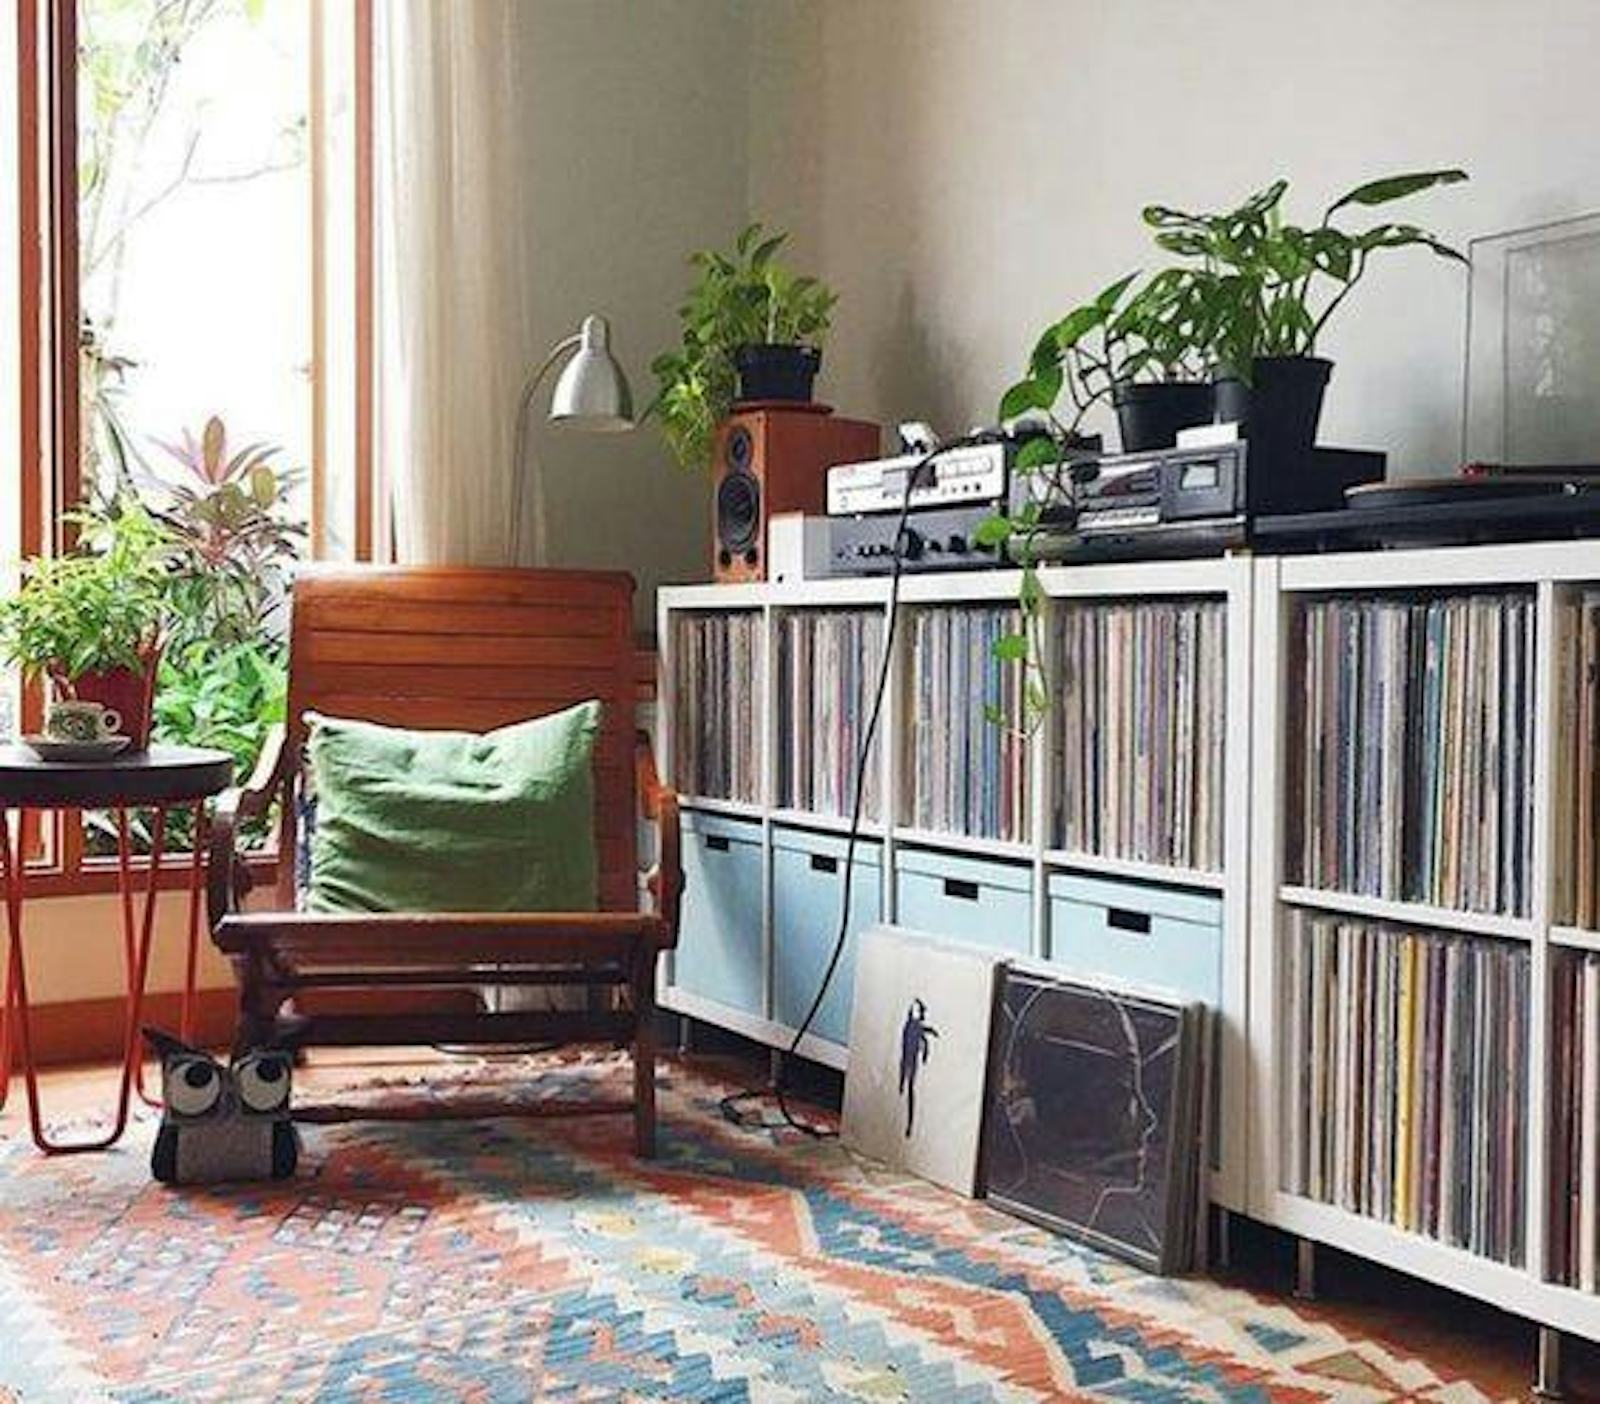 Audio rooms are increasingly popular in interior design